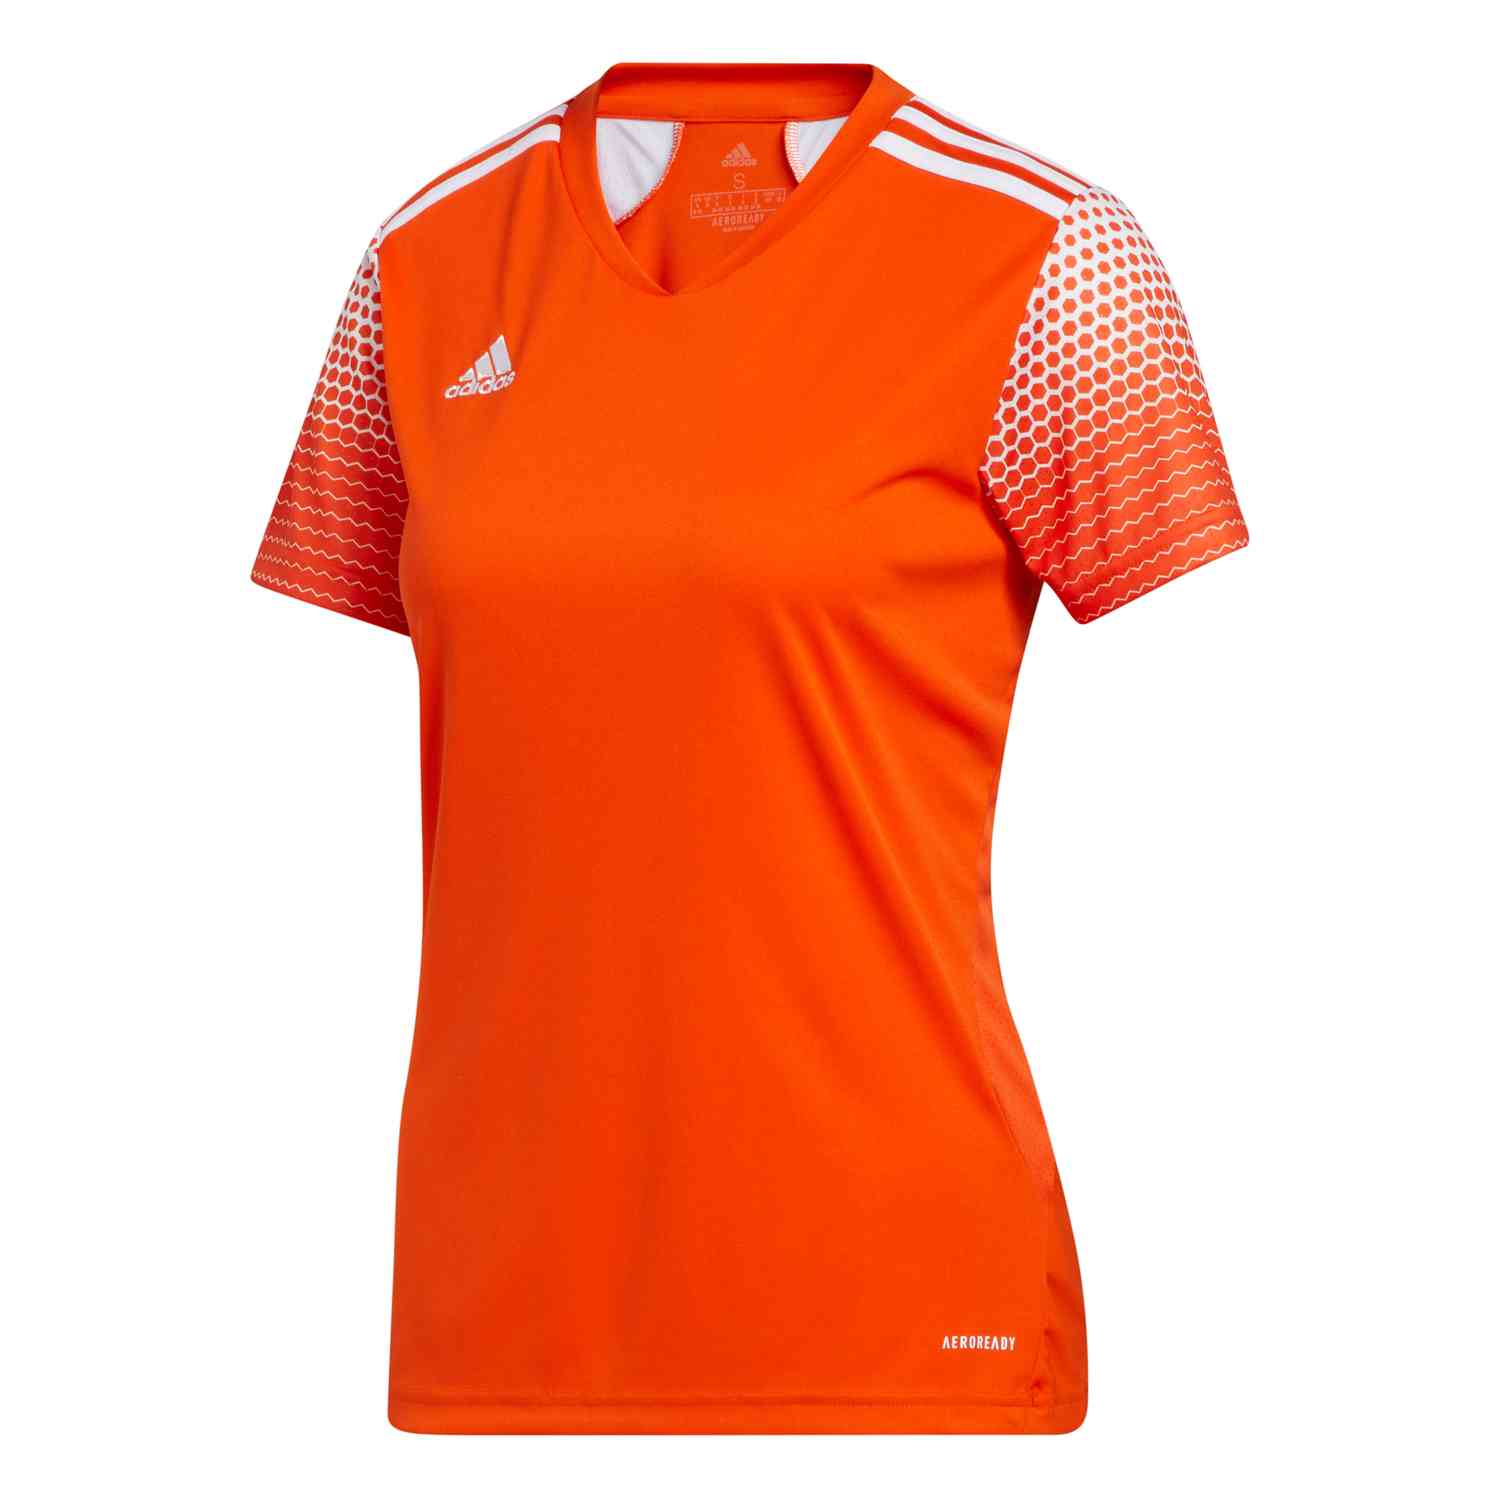 Womens adidas Regista 20 Jersey - Team Orange/White - SoccerPro